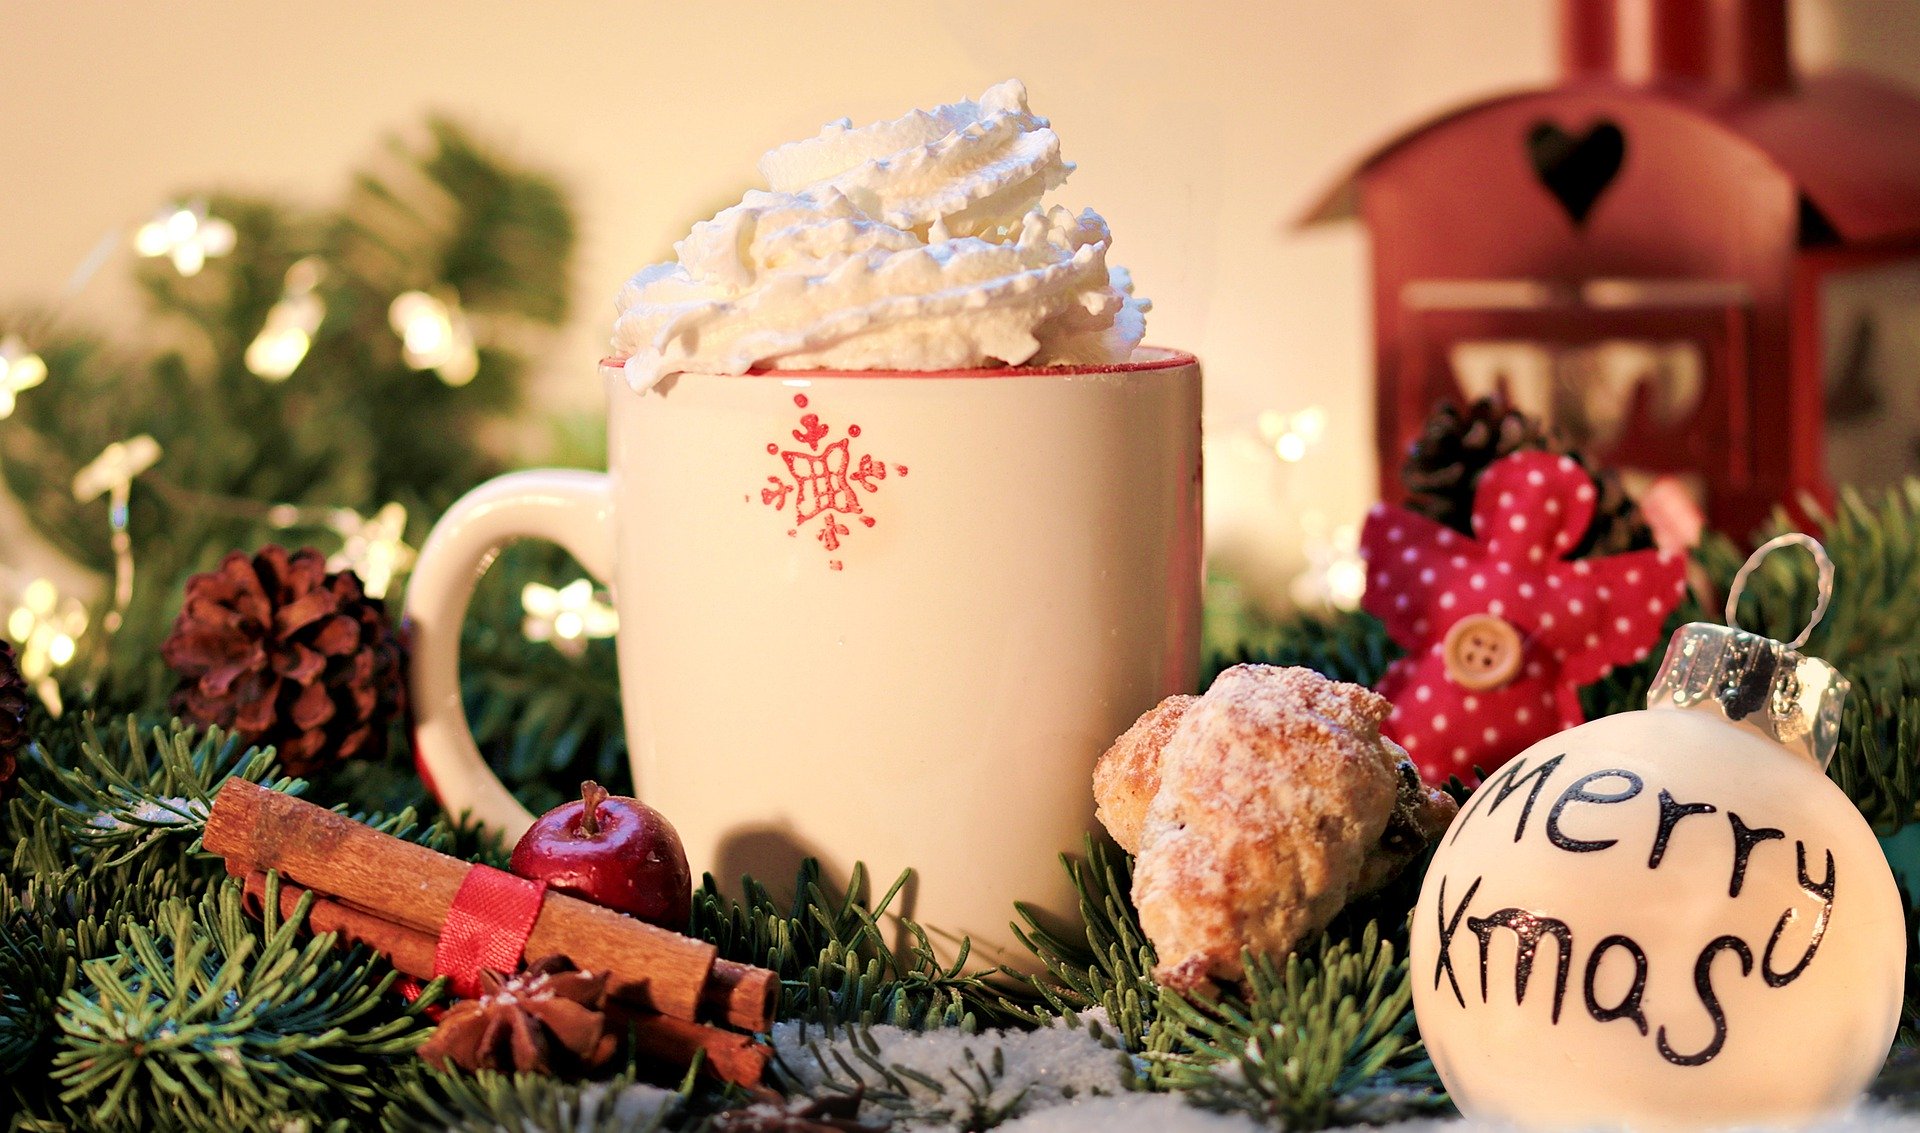 Christmas mug and ornament